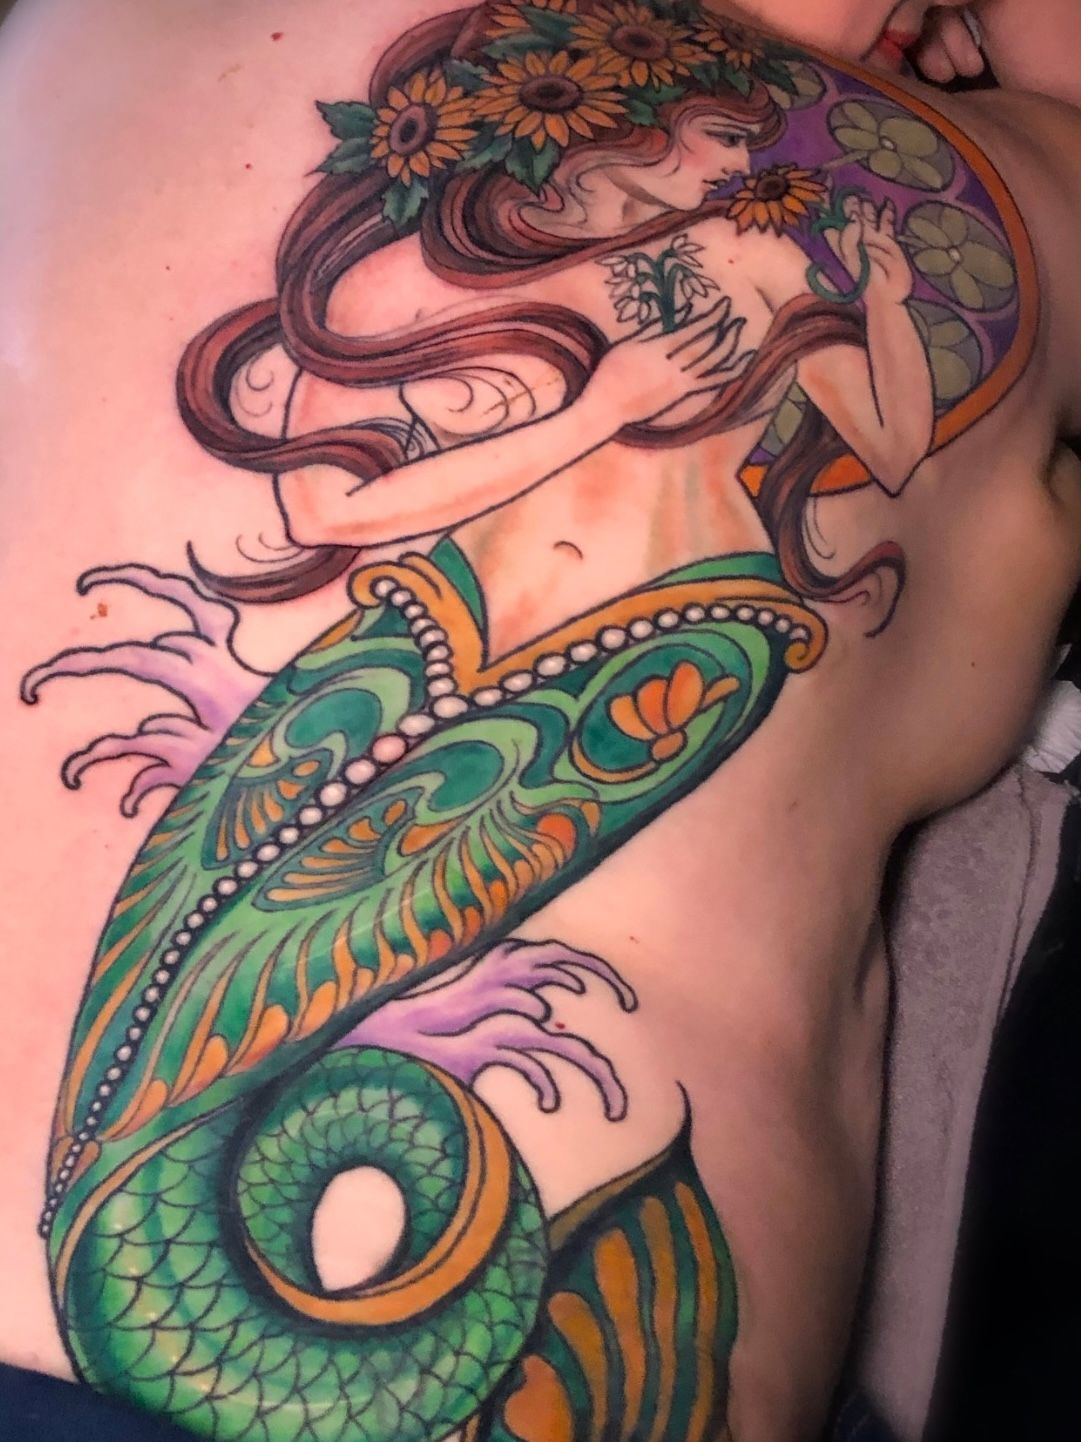 Thick / chubby mermaid tattoo | Fat mermaid, Tattoo themes, Mermaid tattoo